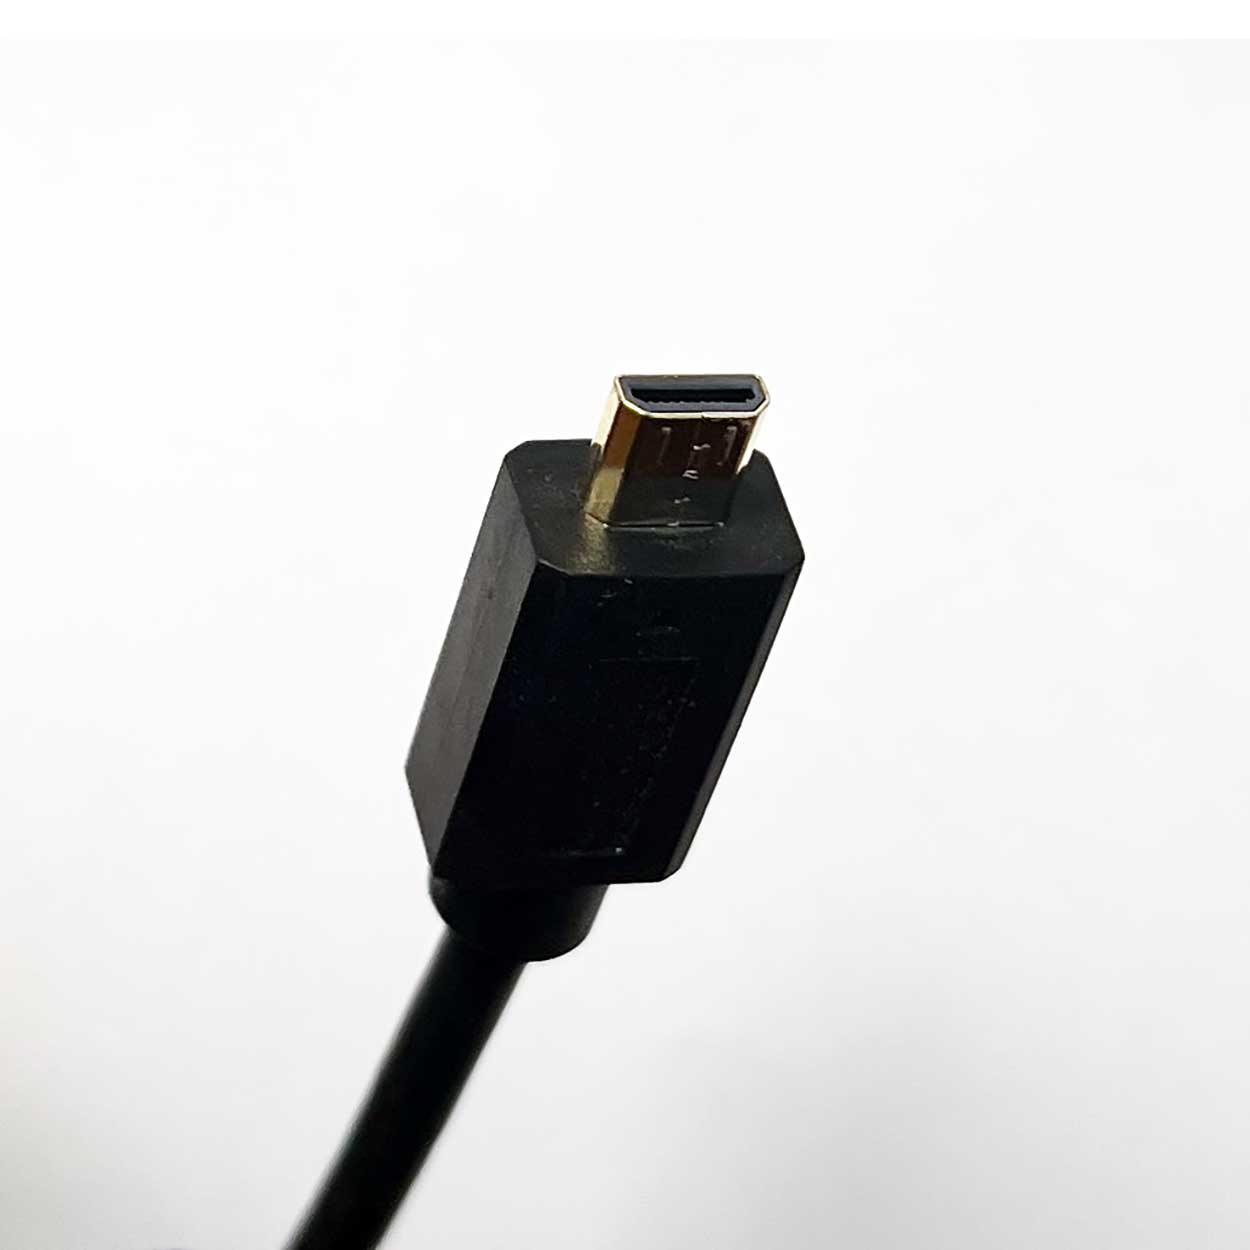 Eschenbach Smartlux Digital HDMI Kabel (für Modell 16502)